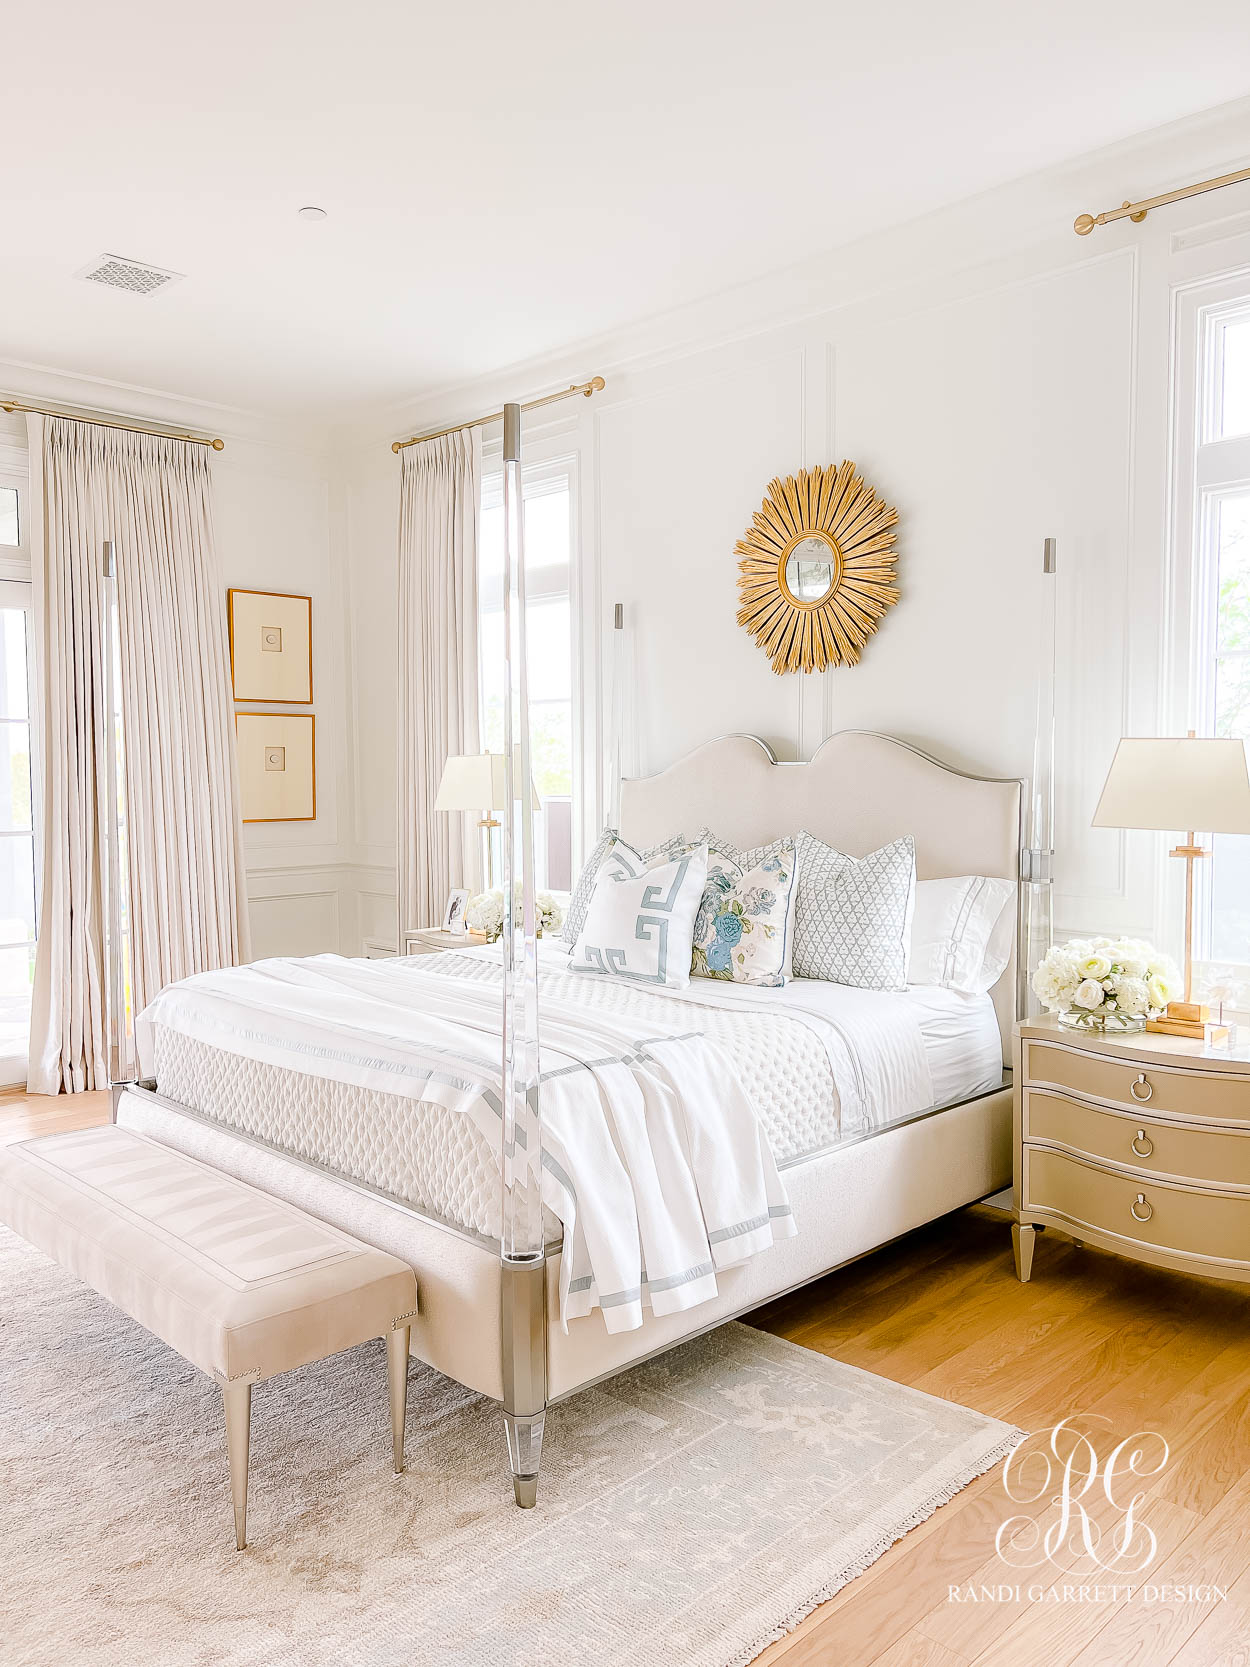 The Wren's Main Bedroom Reveal luxe bedroom design